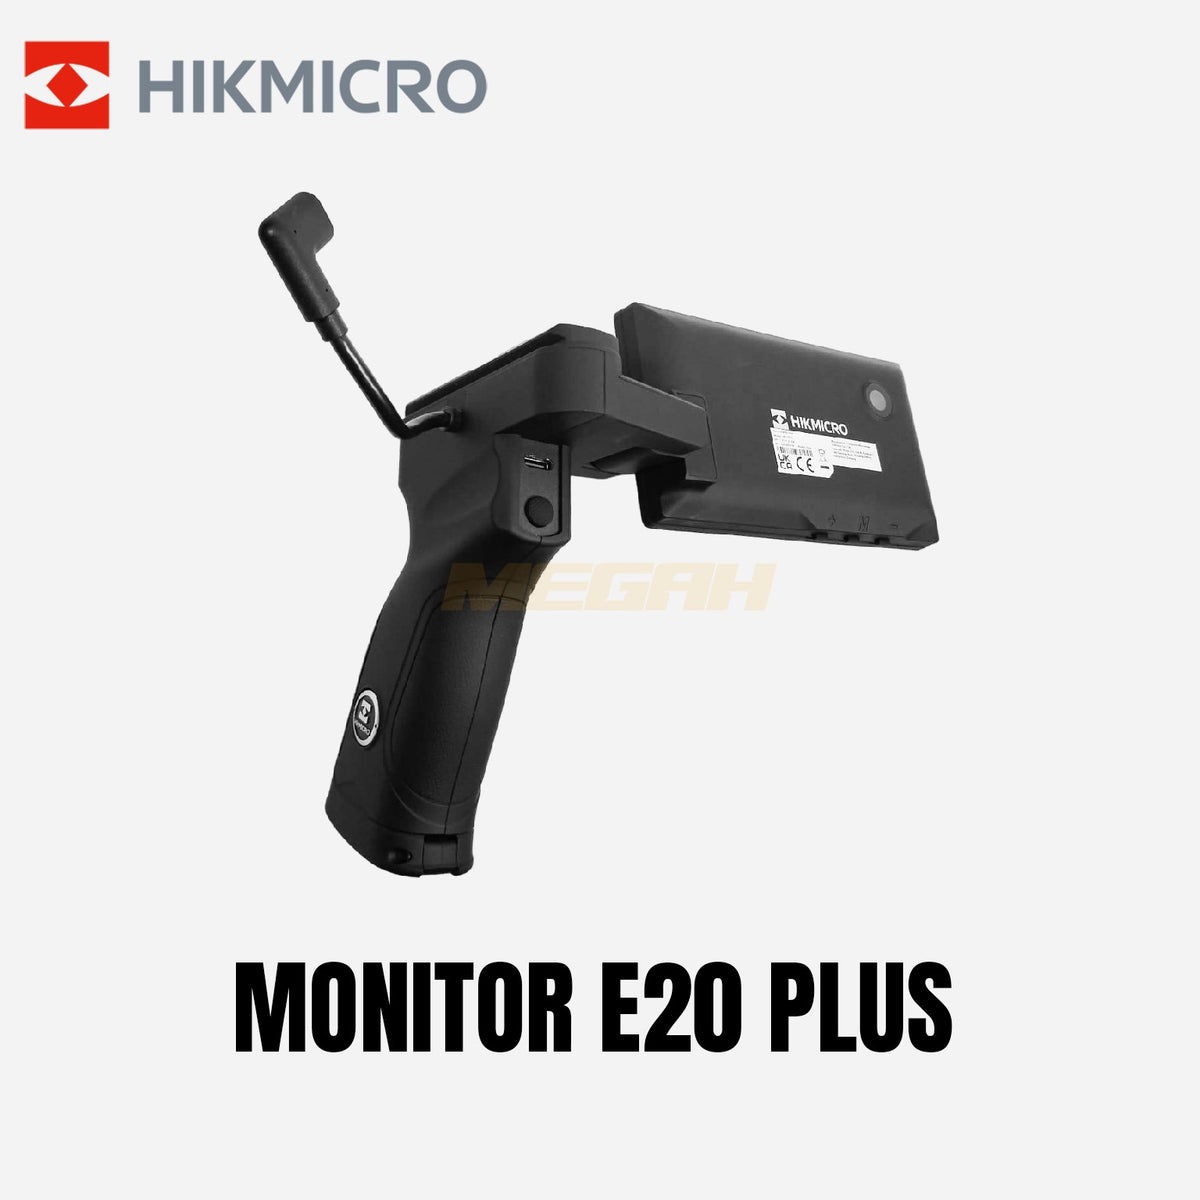 HIKMICRO MONITOR E20 PLUS